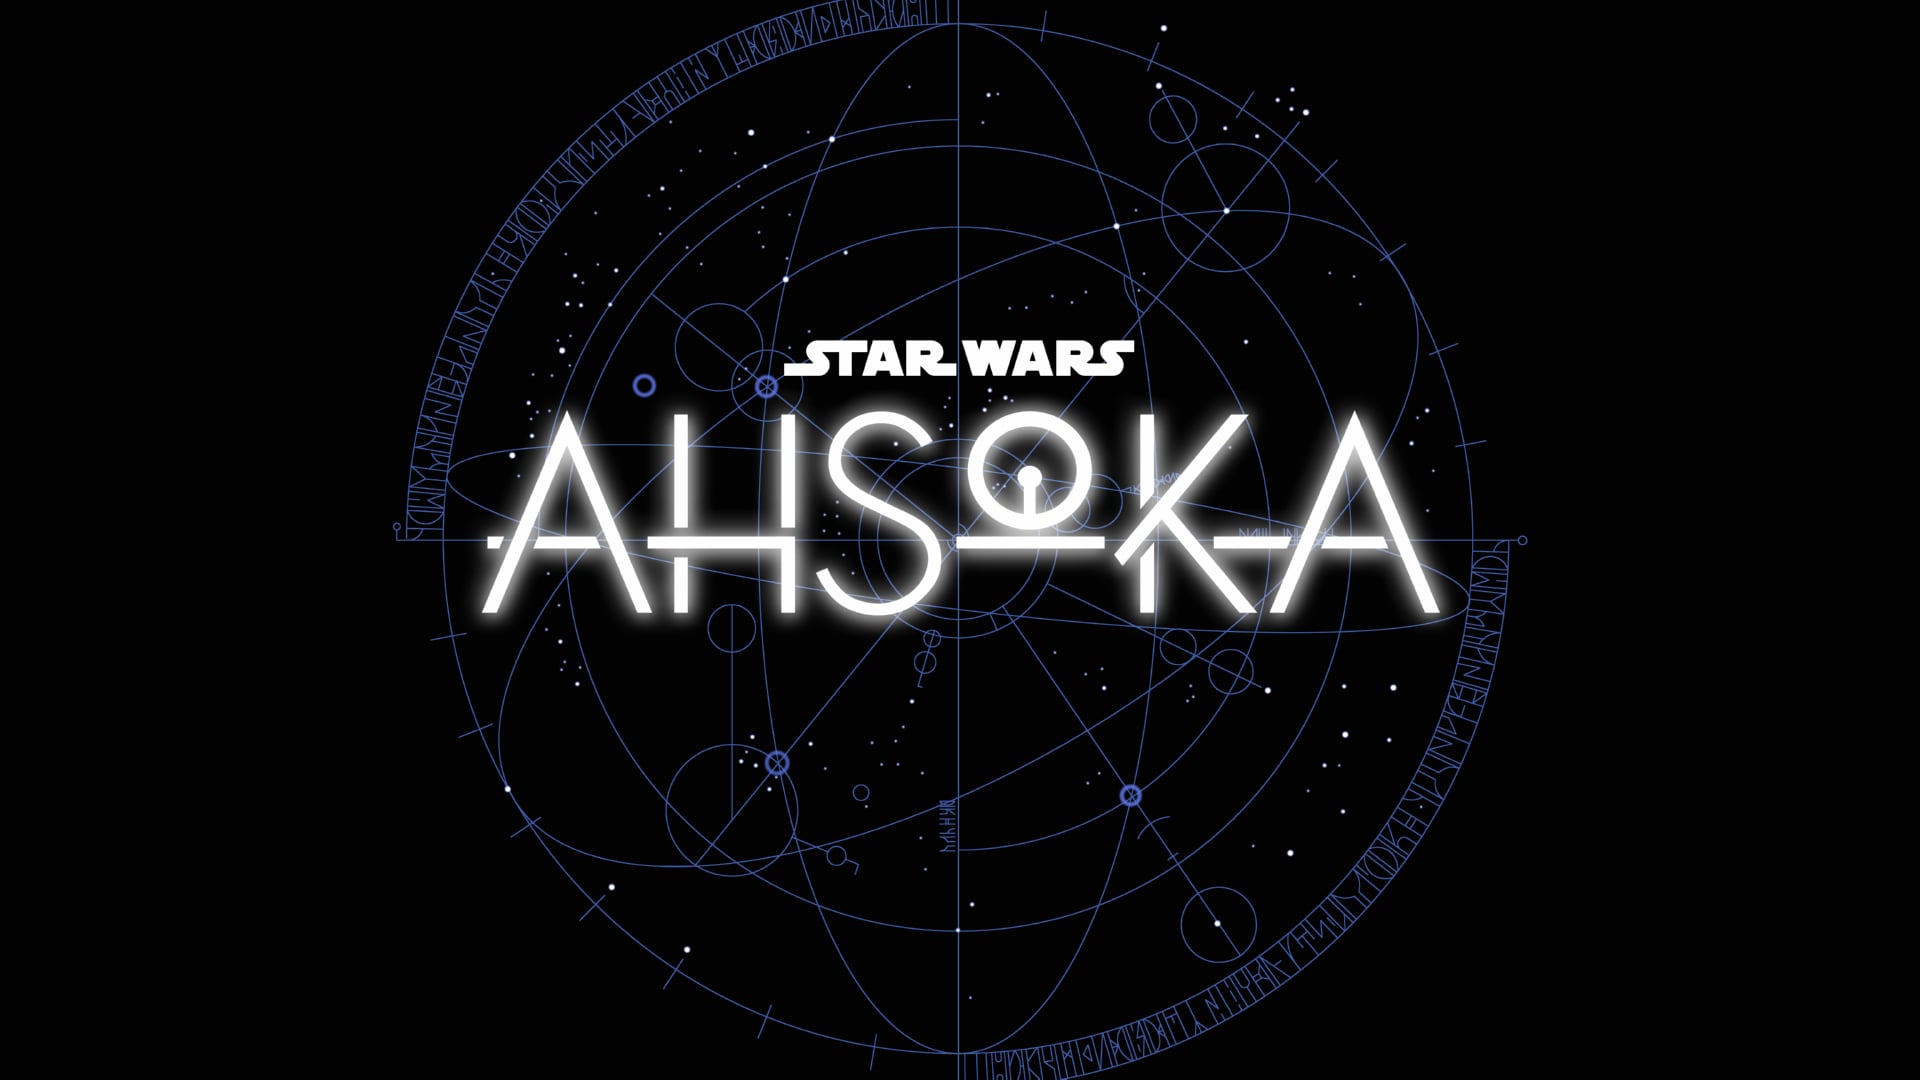 Digital Art Star Wars Ahsoka wallpapers HD quality